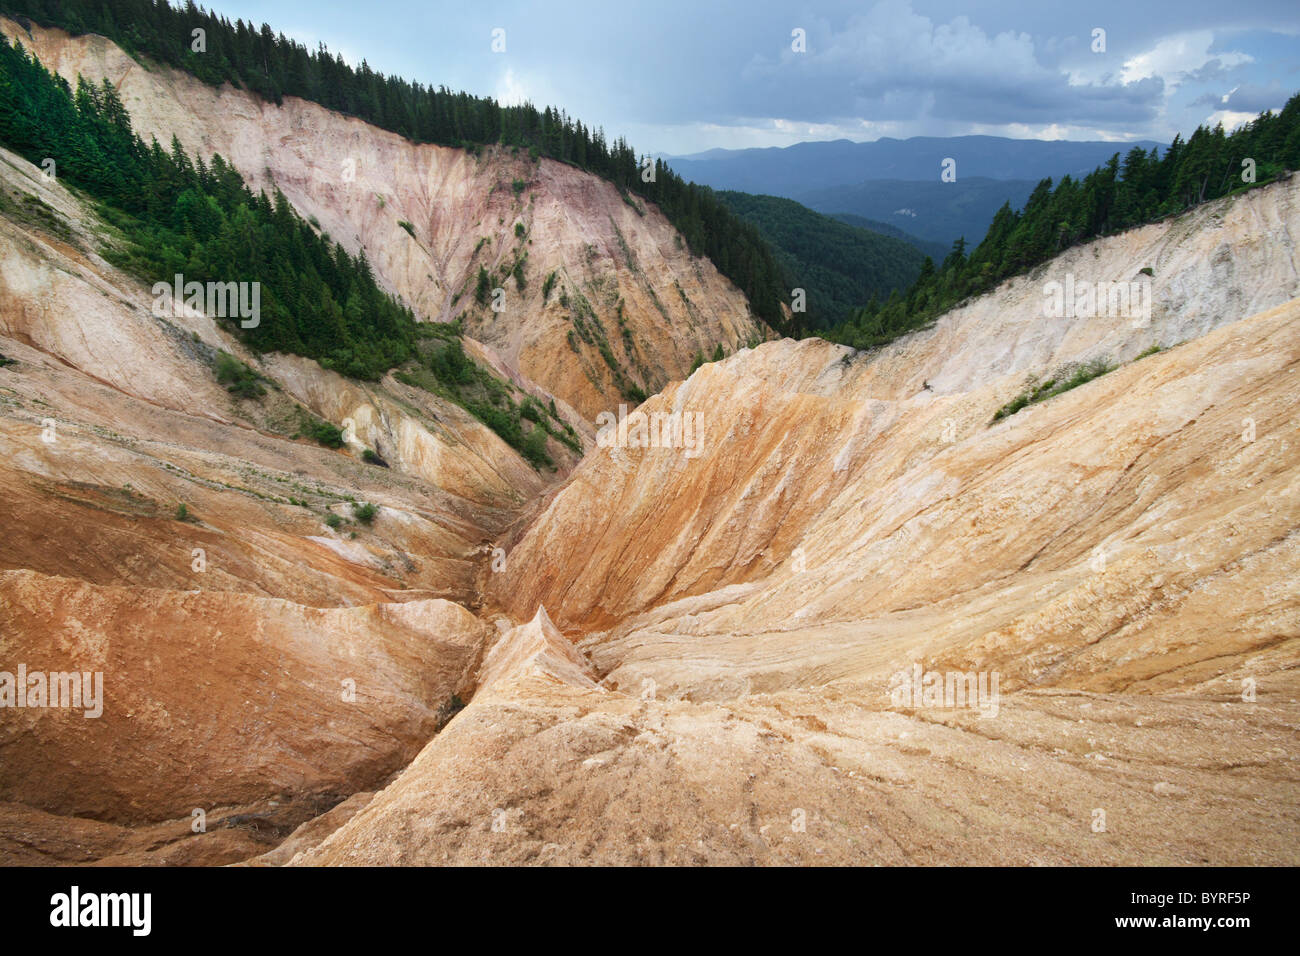 El Rusty Pit - un enorme barranco natural de los Cárpatos occidentales, Rumania Foto de stock